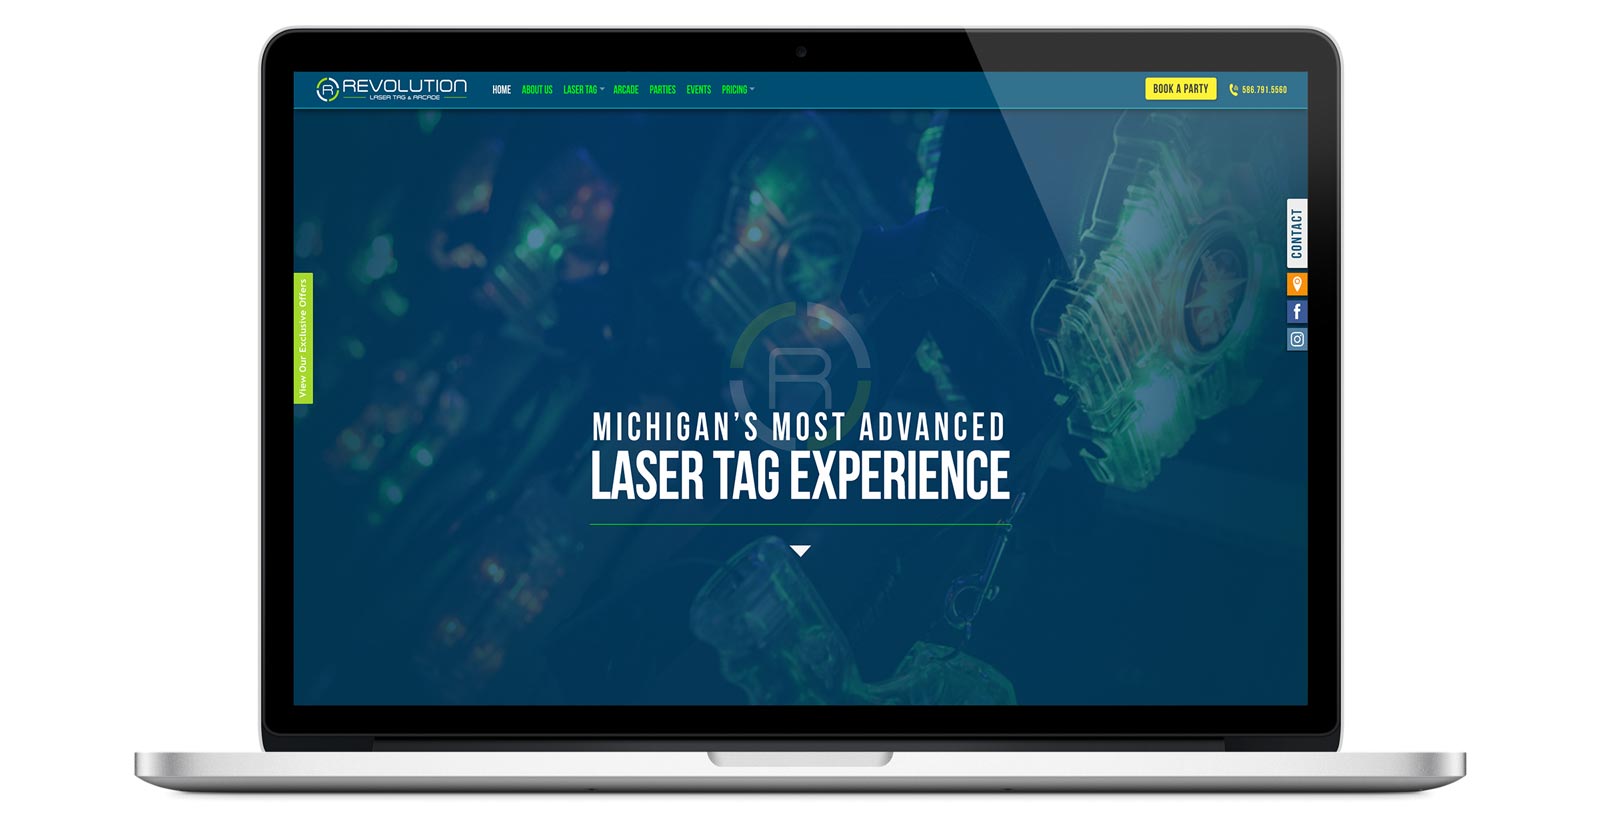 revolution laser tag website homepage on laptop